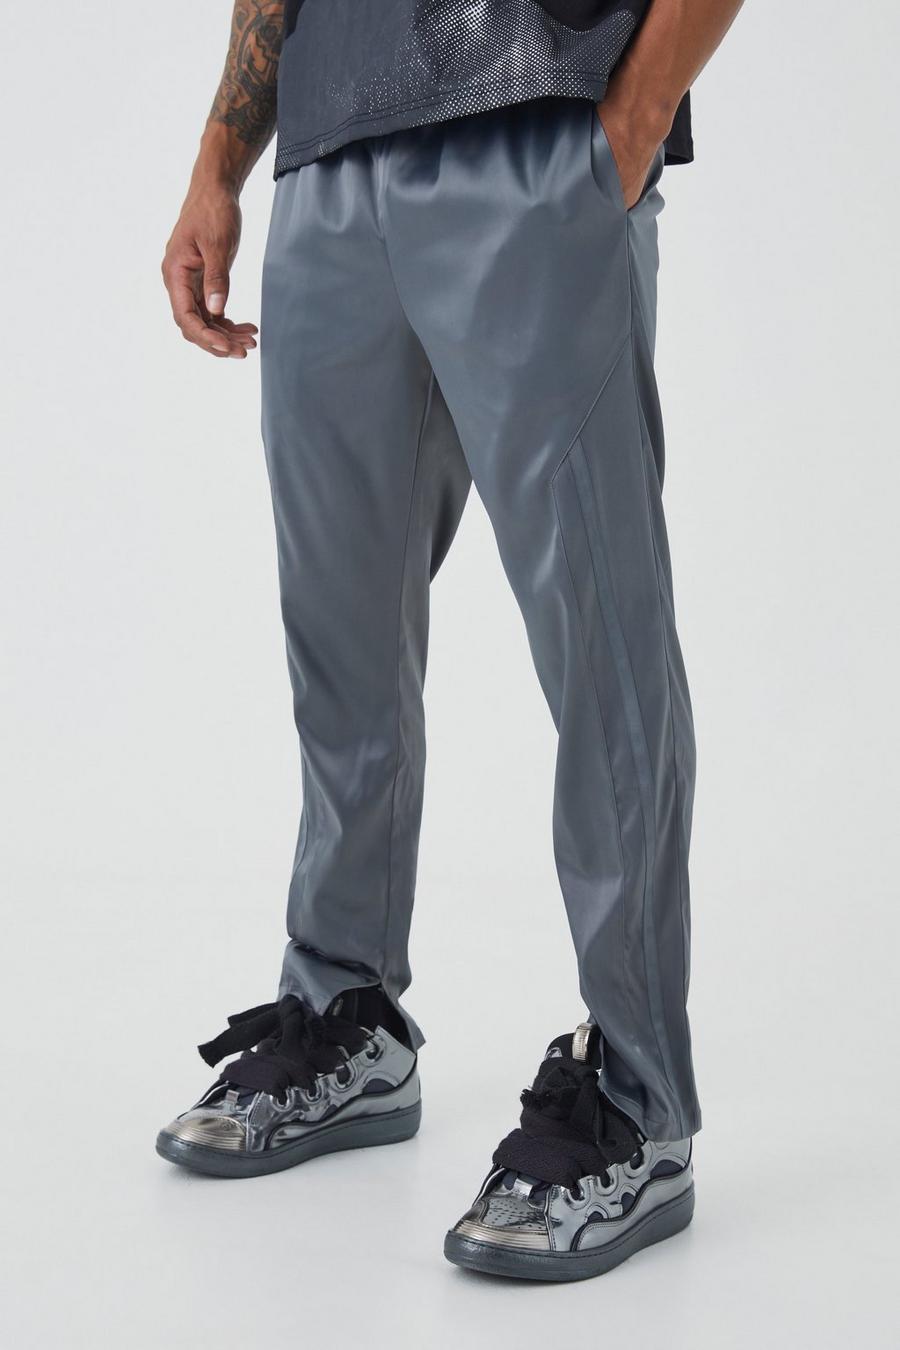 Pantaloni Slim Fit in raso con striscia e spacco sul fondo, Charcoal